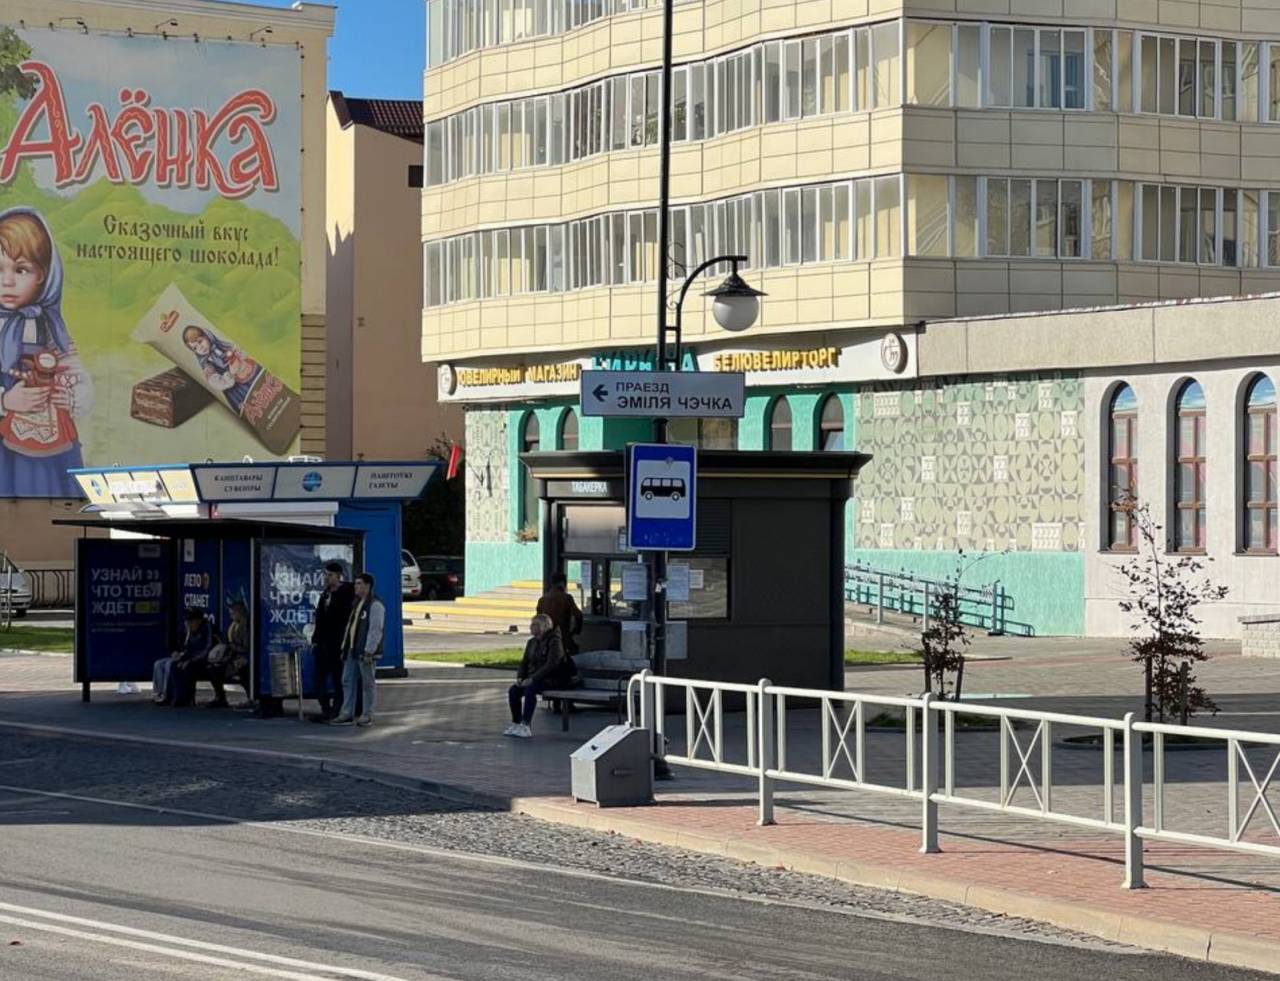 Теперь найти проезд Чечко в Гродно будет куда проще: на улицах появились дорожные указатели